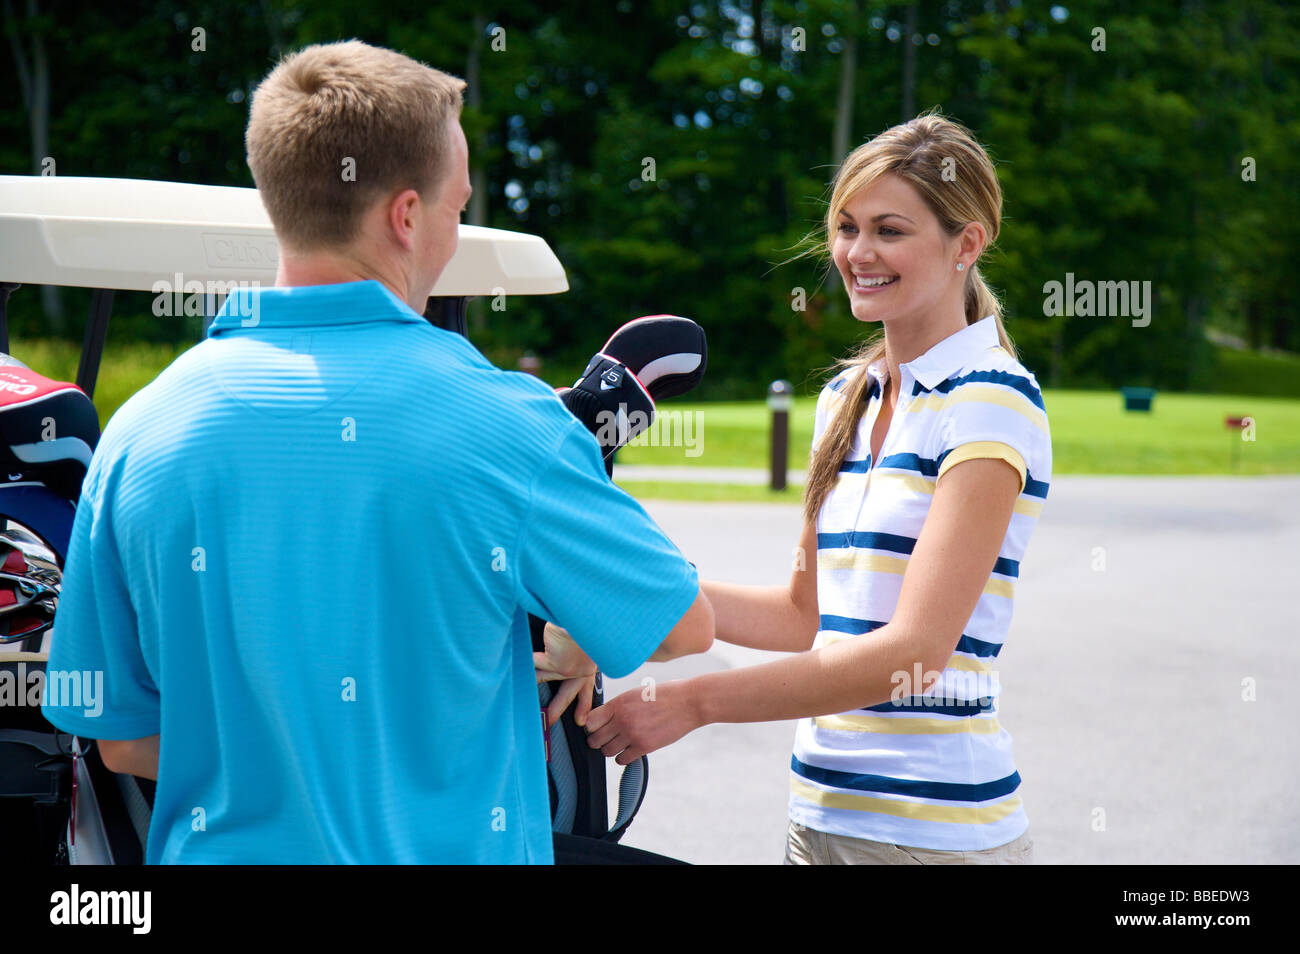 Couple Loading Golf Cart, Burlington, Ontario, Canada Stock Photo